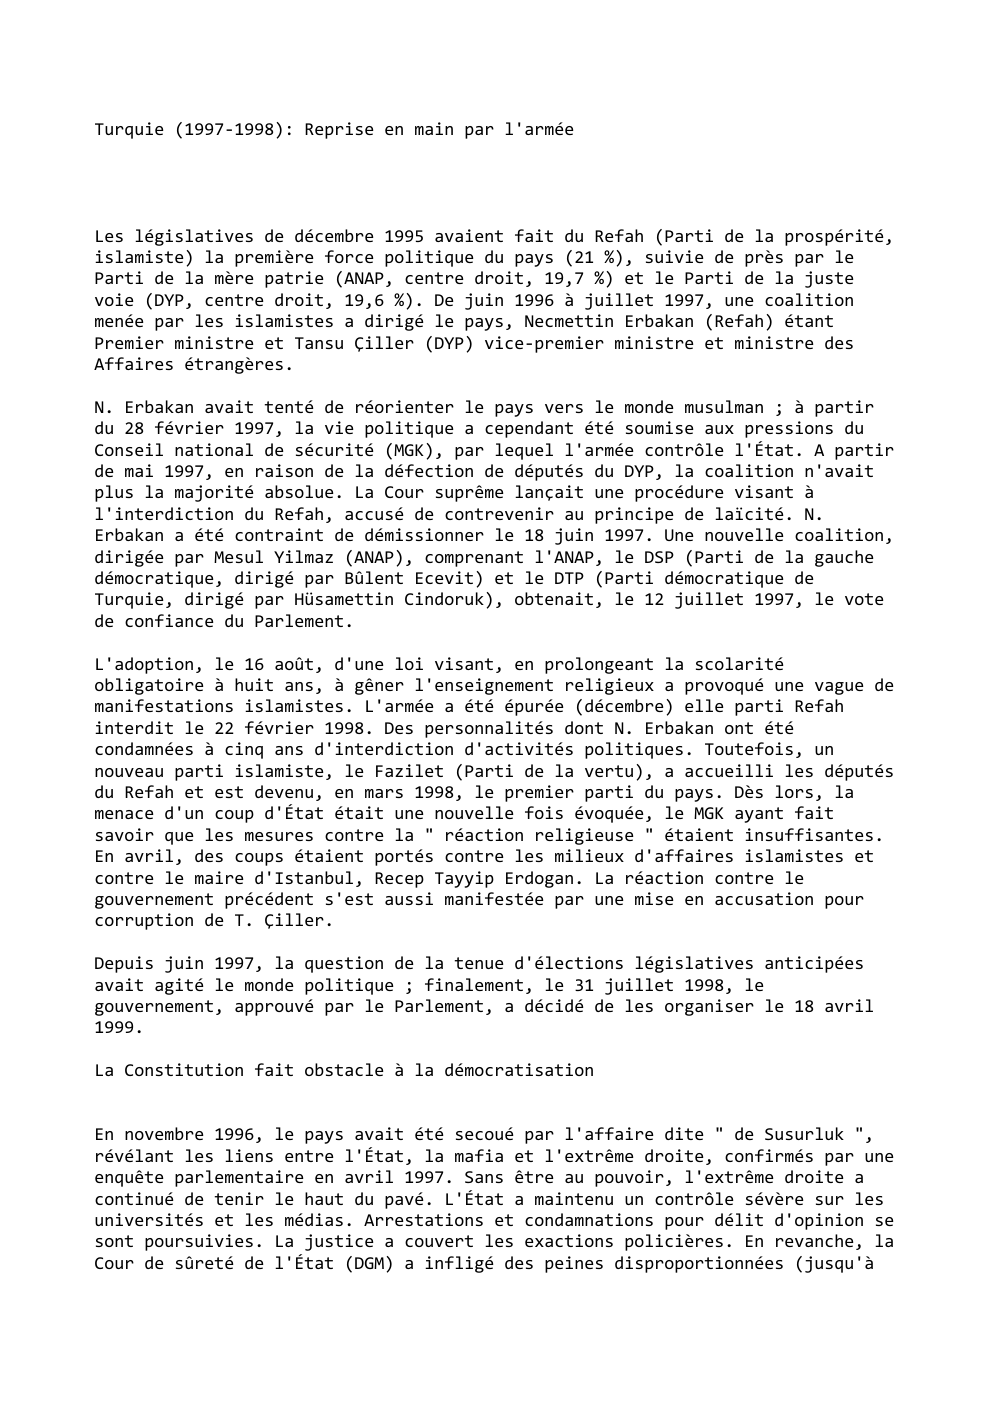 Prévisualisation du document Turquie (1997-1998): Reprise en main par l'armée

Les législatives de décembre 1995 avaient fait du Refah (Parti de la prospérité,...